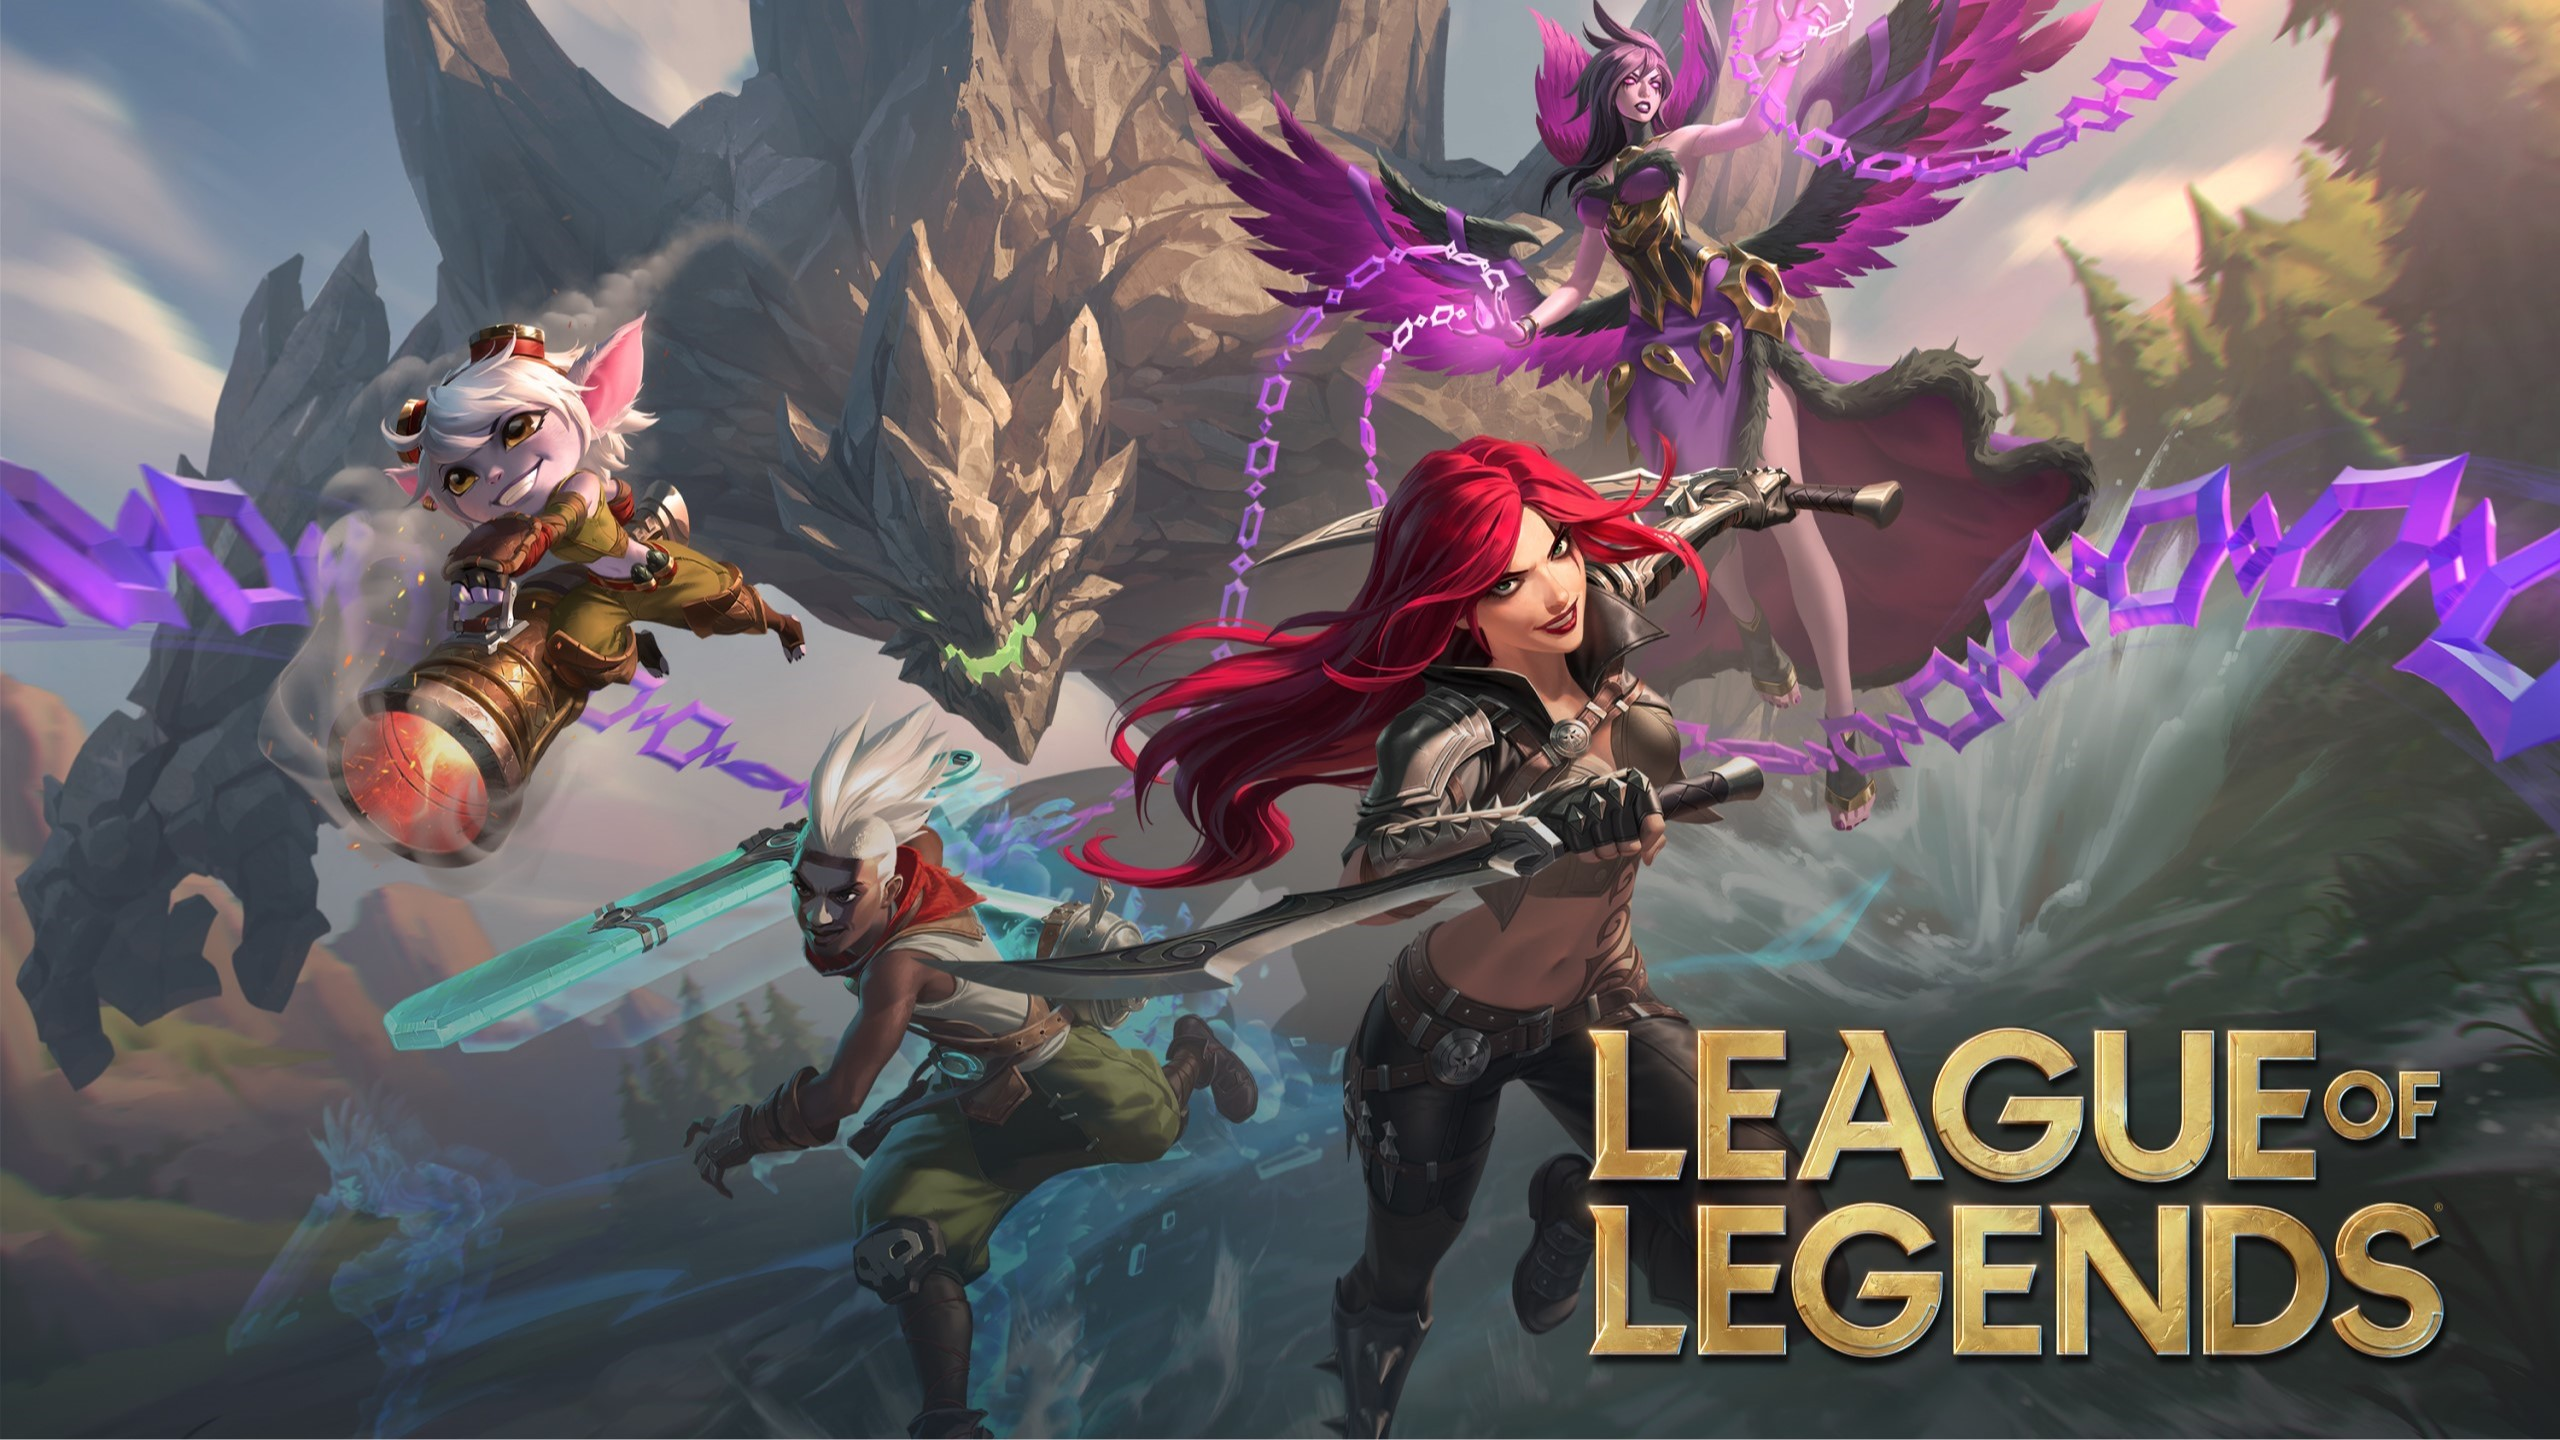 Imagen promocional de League of Legends.